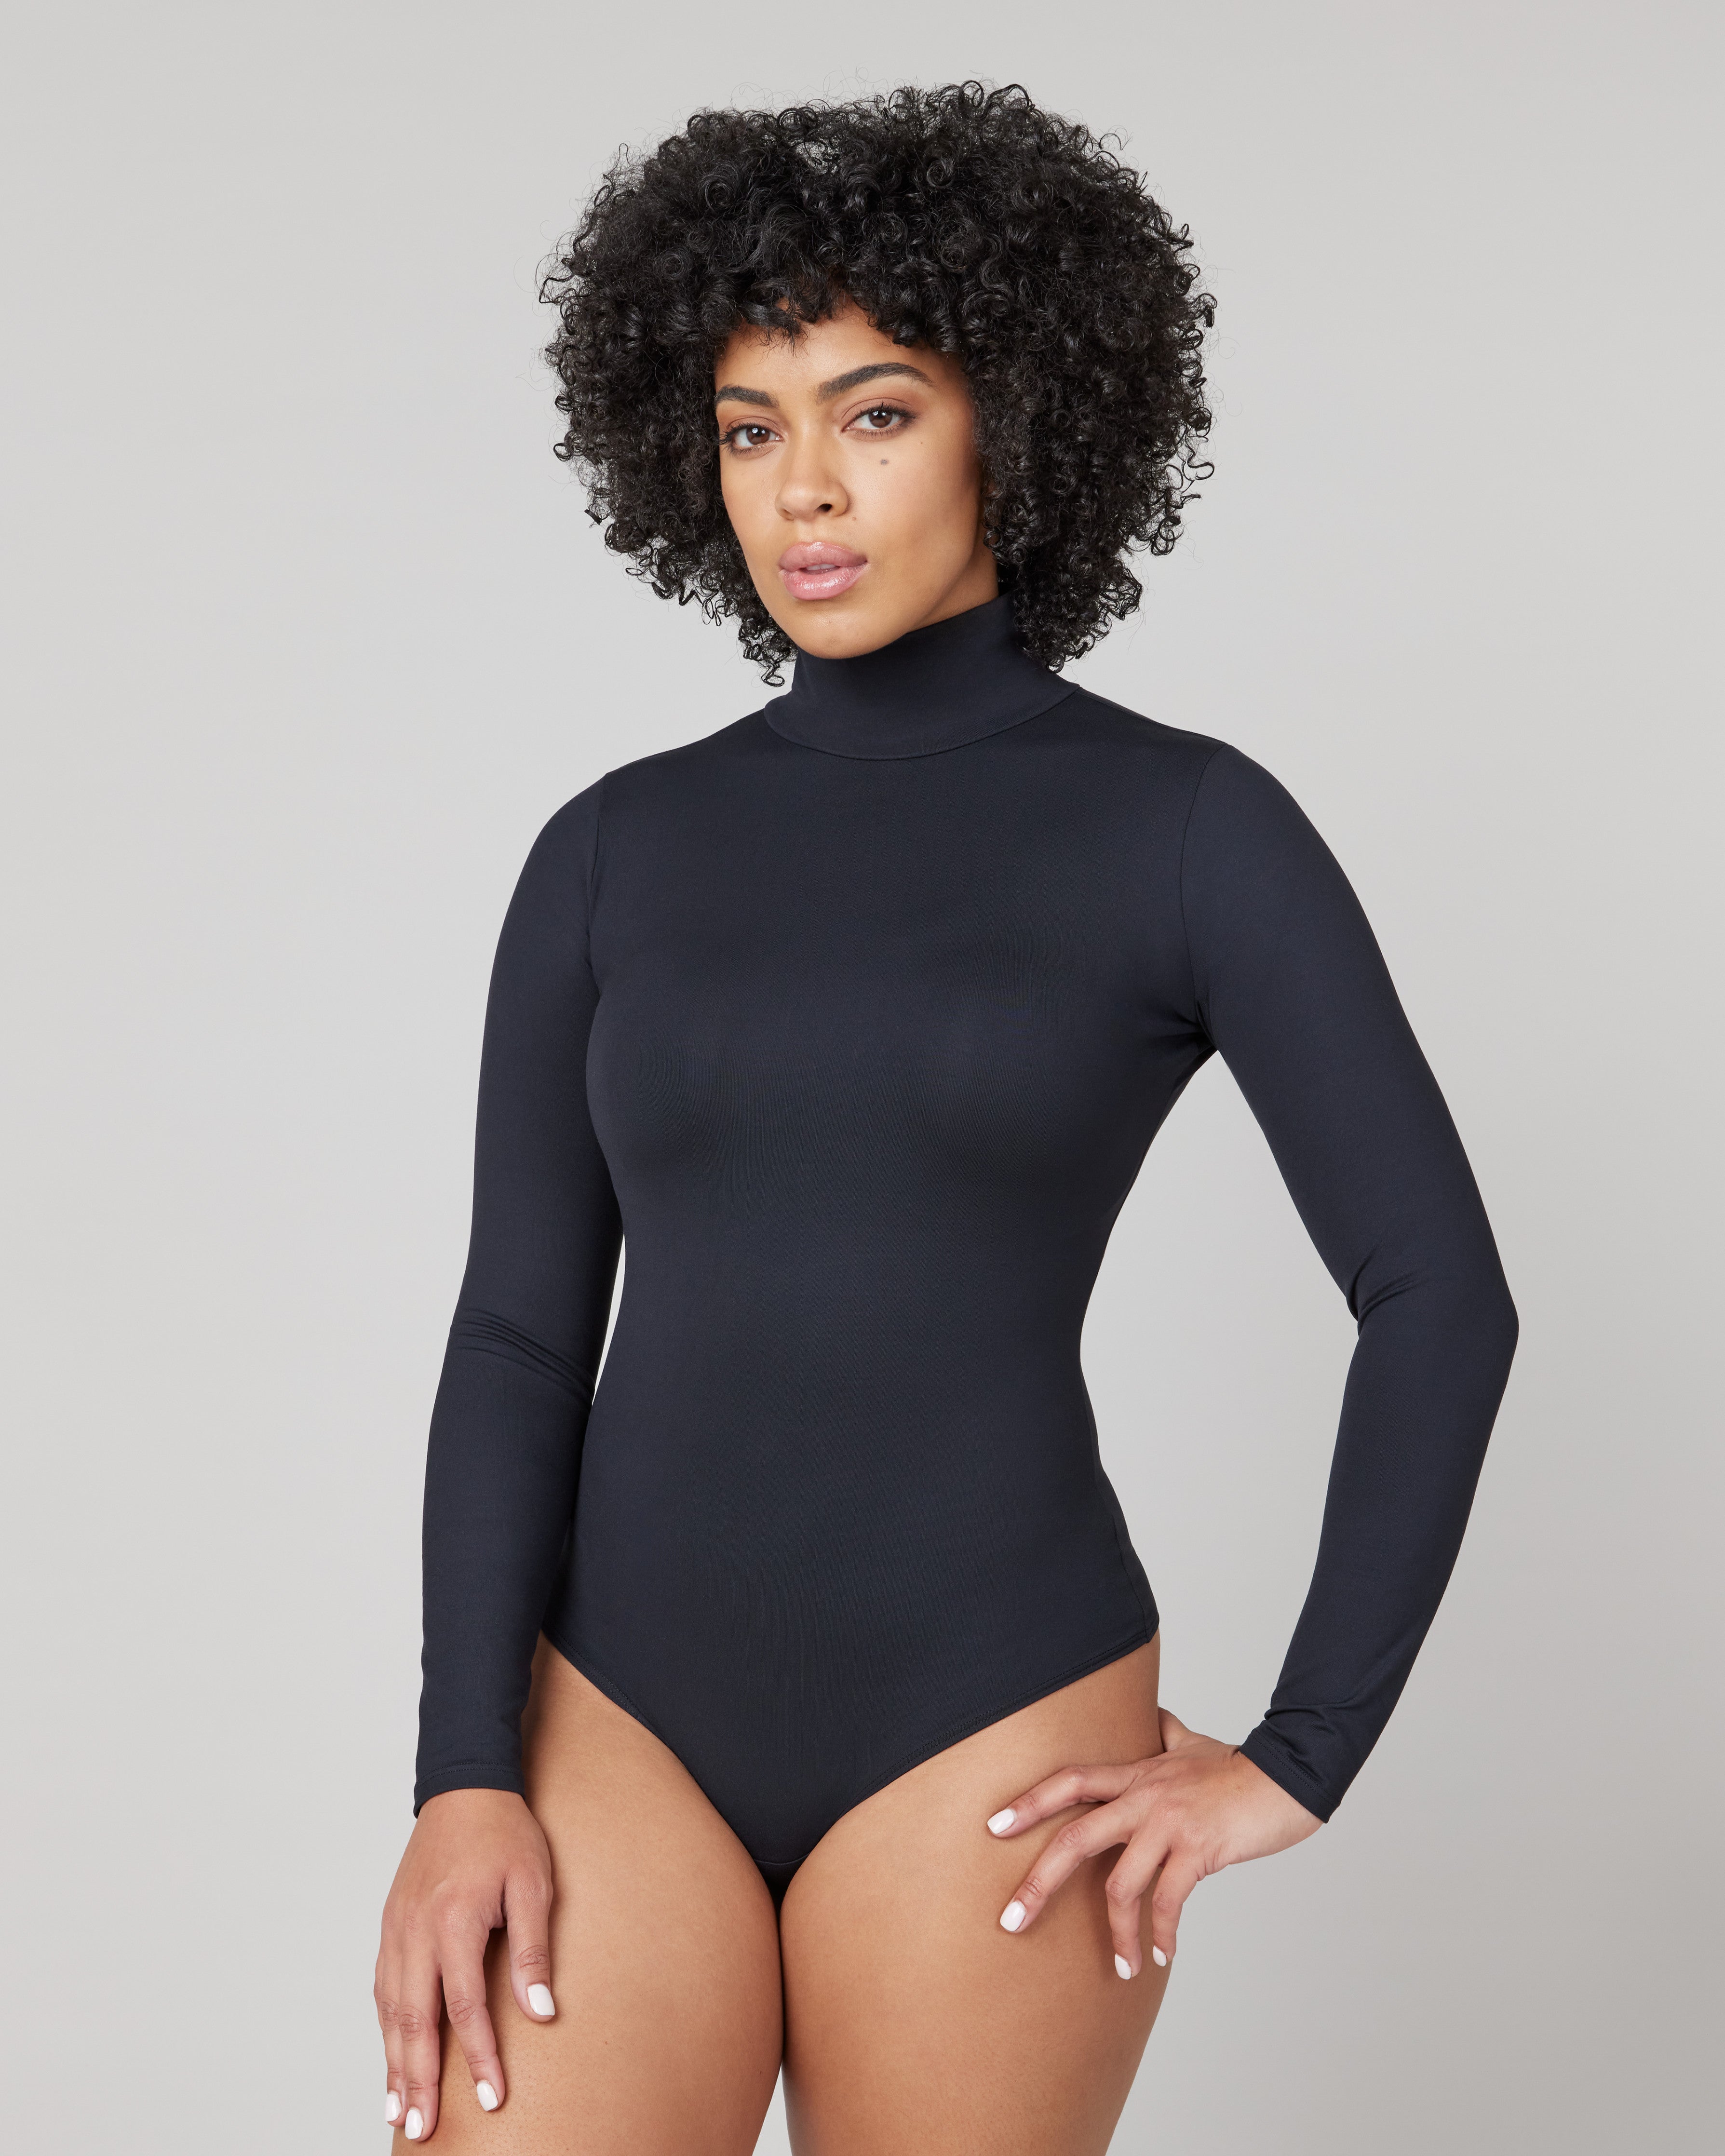 Women's Turtleneck Bodysuit